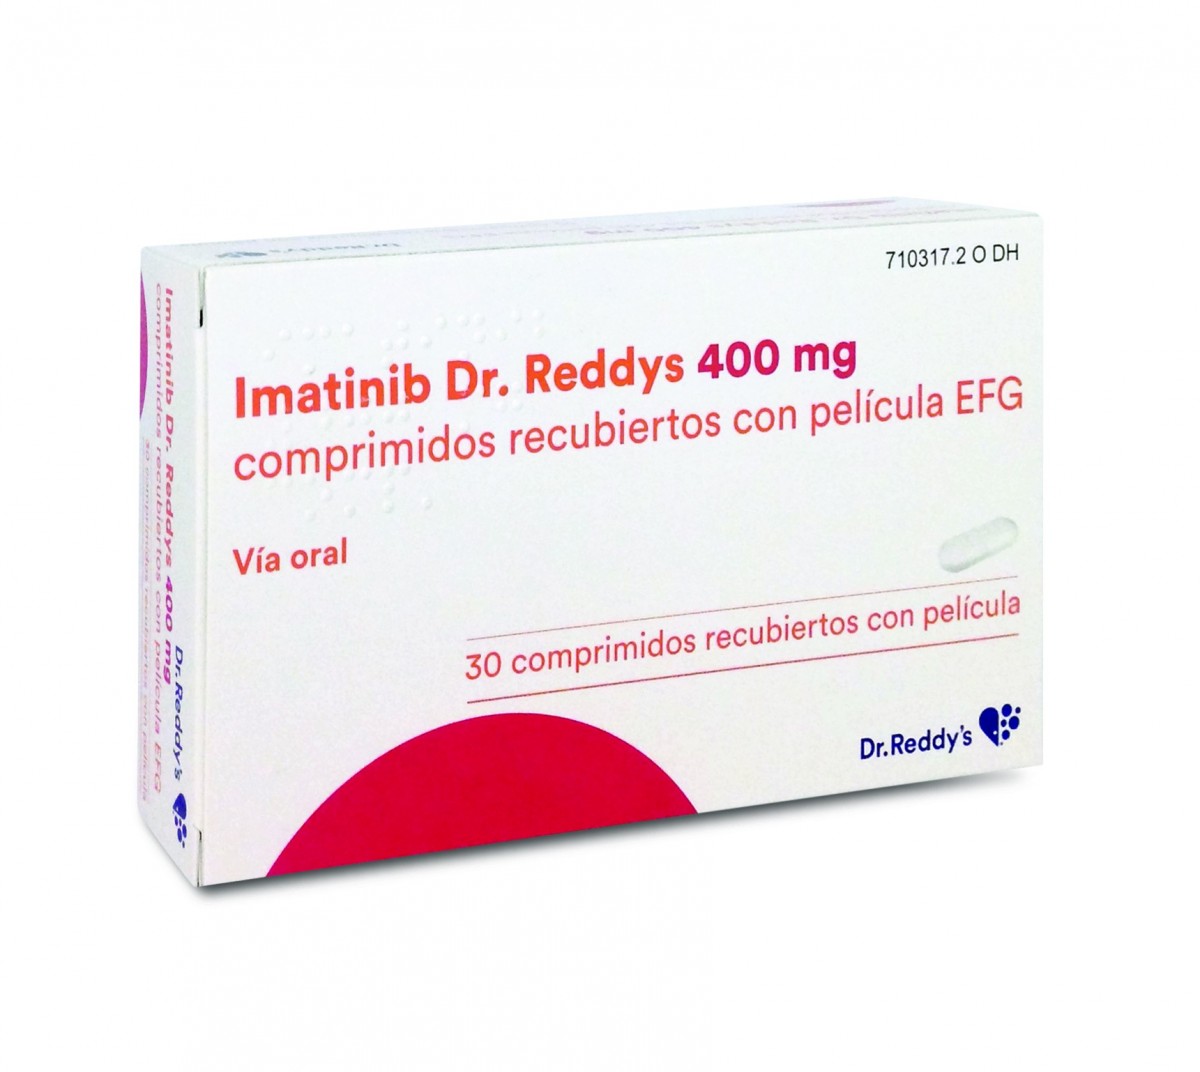 IMATINIB DR. REDDYS 400 MG COMPRIMIDOS RECUBIERTOS CON PELICULA EFG , 30 comprimidos fotografía del envase.